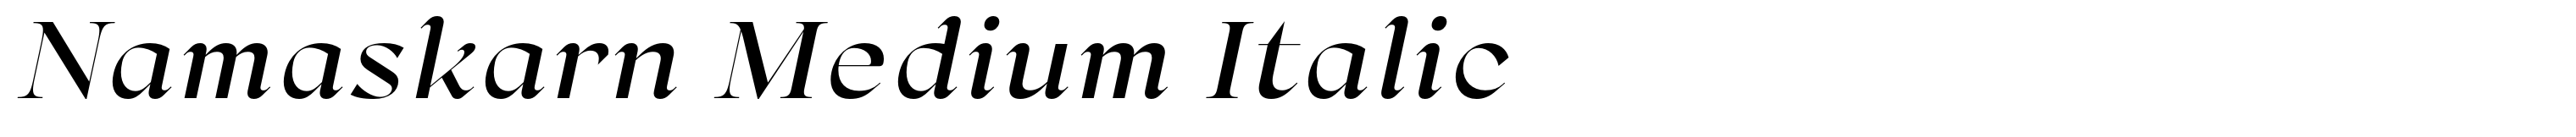 Namaskarn Medium Italic